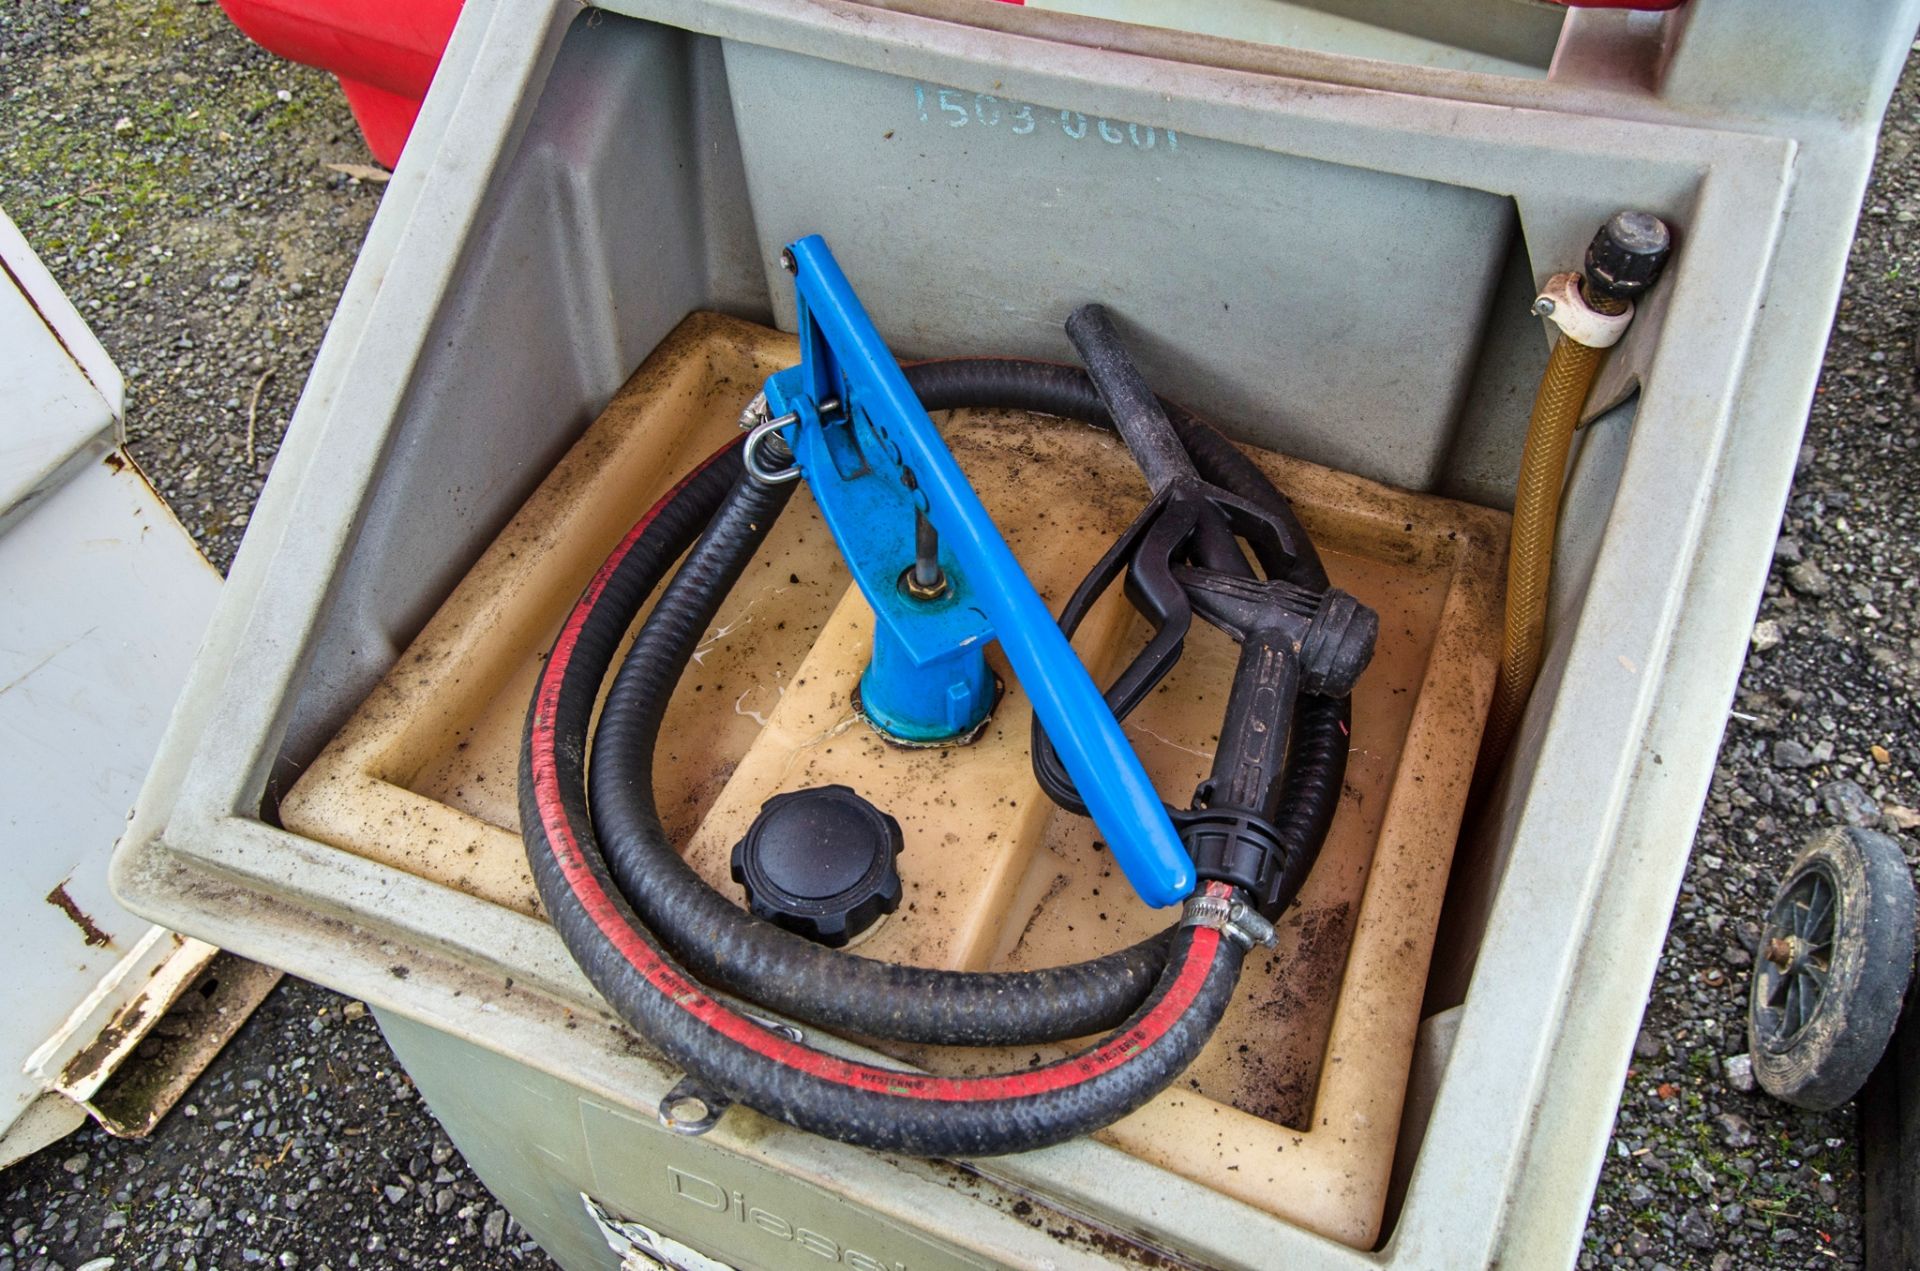 Western Kaddi 100 litre bunded fuel bowser c/w manual pump, delivery hose & nozzle 15030601 - Image 2 of 2